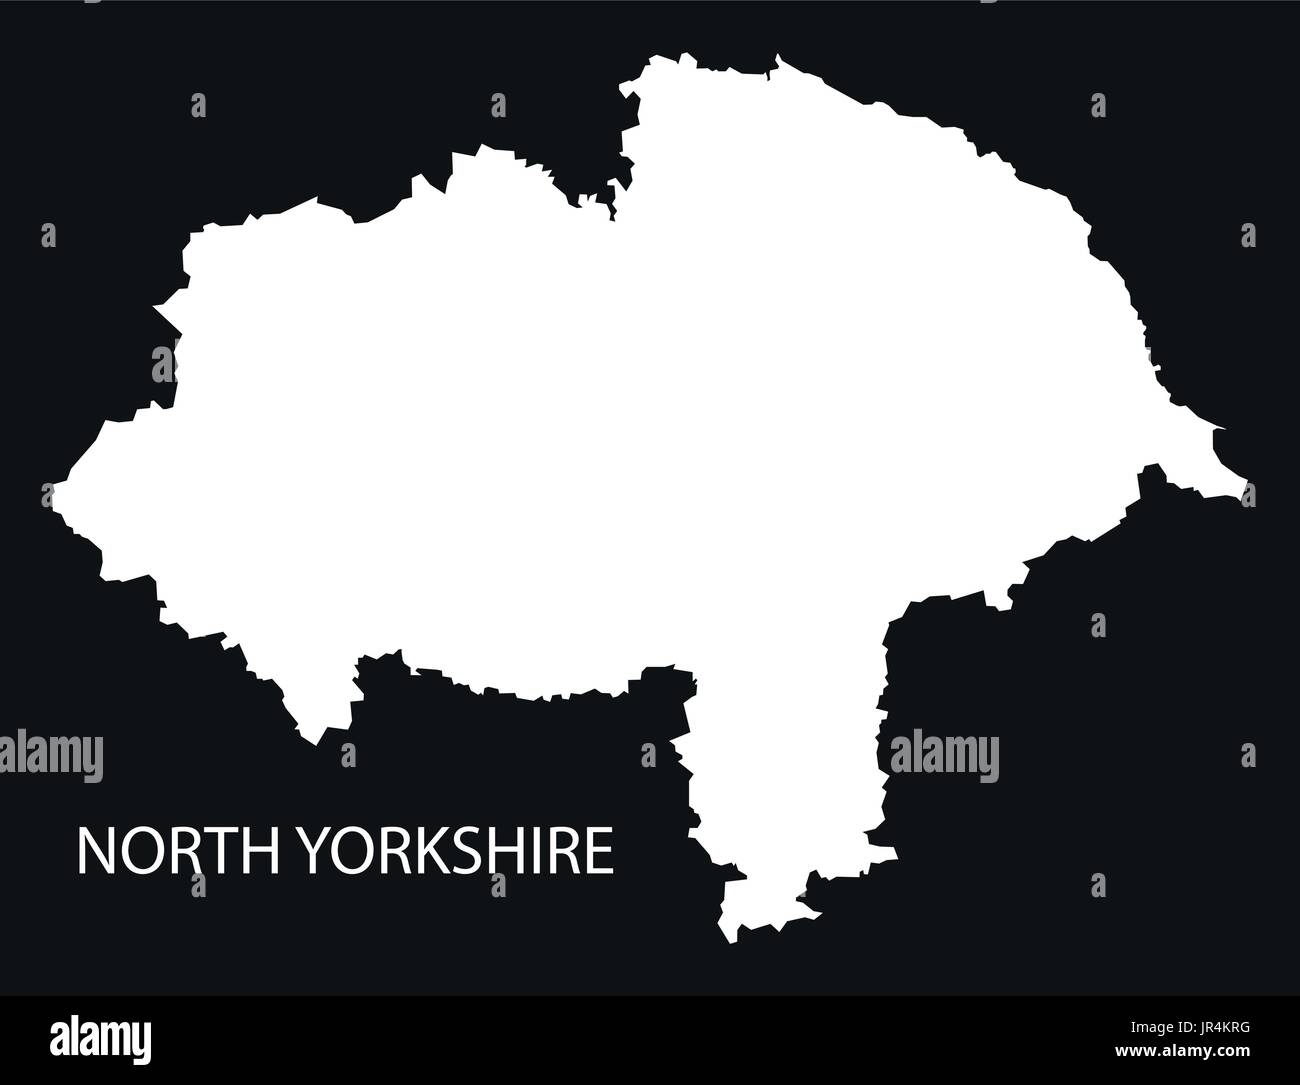 North Yorkshire England UK Karte schwarze Silhouette invertierte Darstellung Stock Vektor